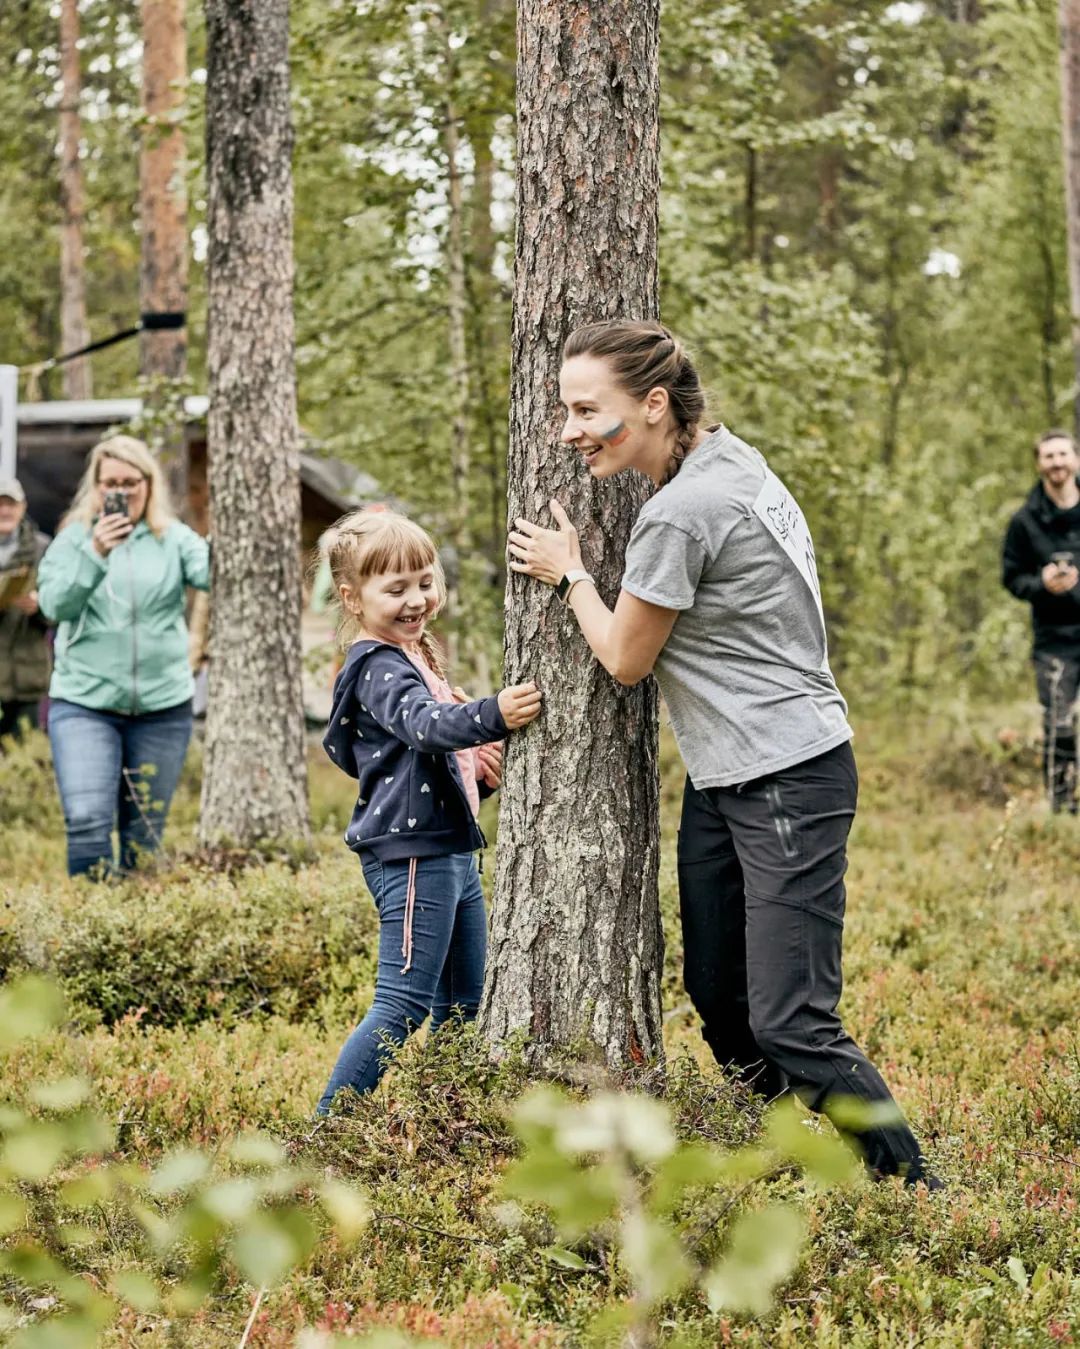 Cuộc thi ôm cây Phần Lan - hành trình tìm về sự tự nhiên. Cùng tìm hiểu về cuộc thi đầy thú vị này để hiểu hơn về tình yêu và trách nhiệm của con người đối với môi trường. Hãy tham gia để trải nghiệm, tạo dấu ấn và đóng góp cho sự phát triển bền vững.